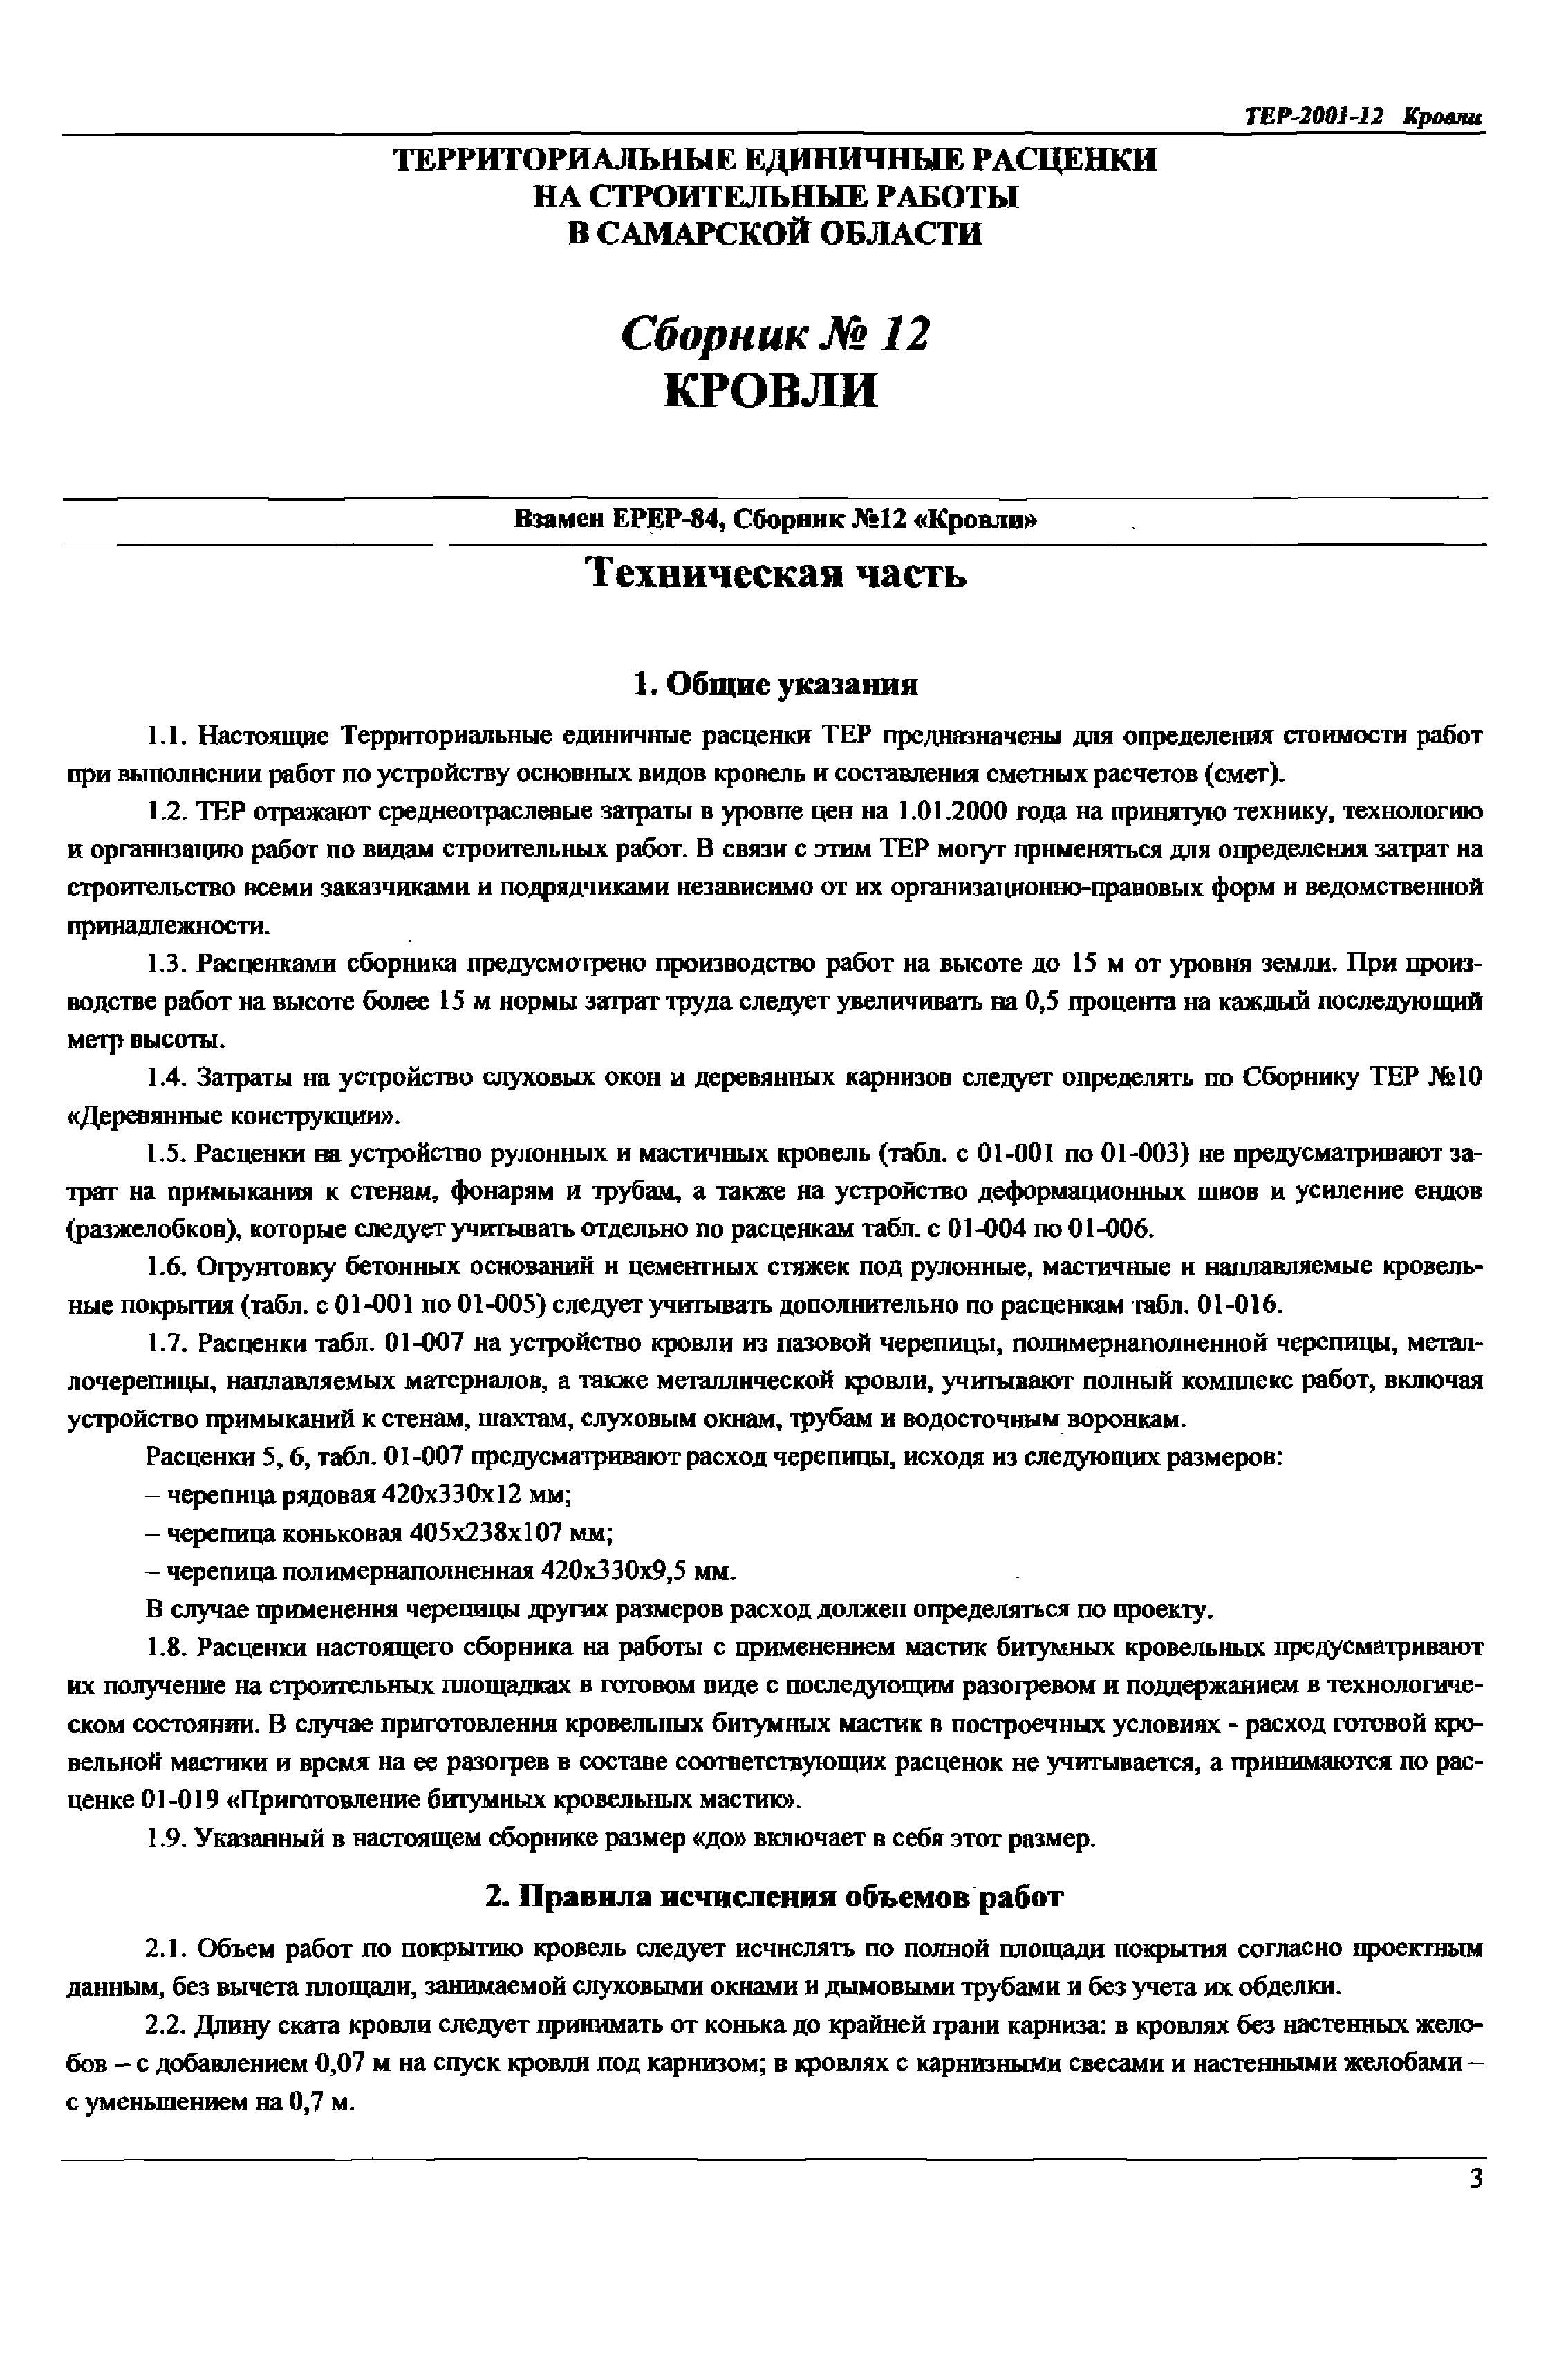 ТЕР Самарской области 2001-12